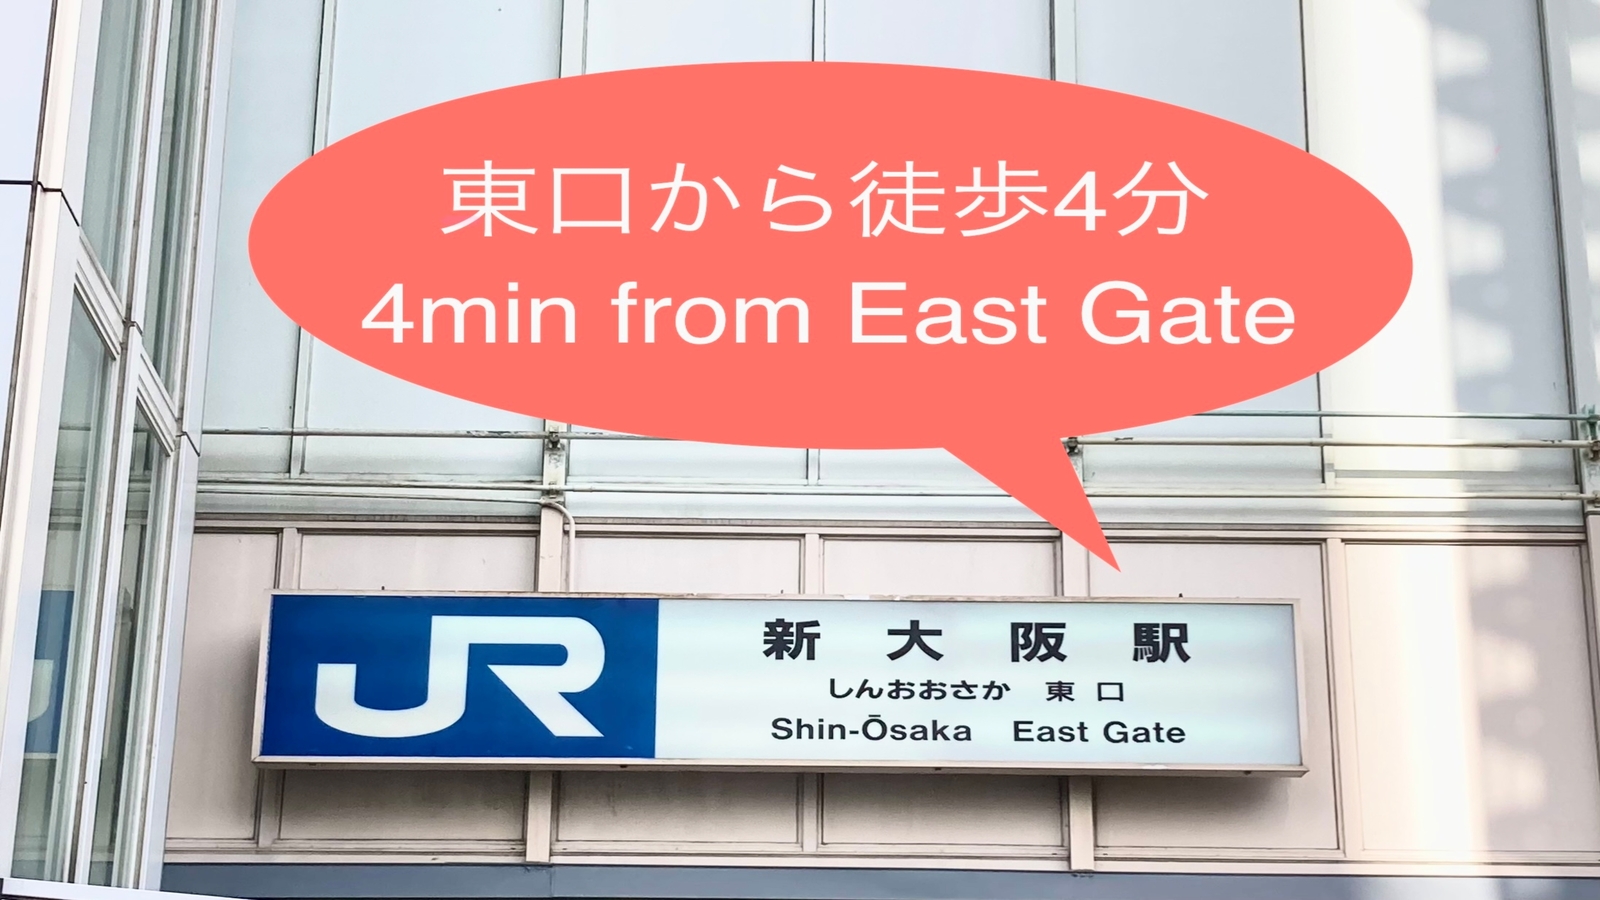 道順◆新大阪駅東口階段を下り、右手に進む。JR在来線に沿って南に進む。